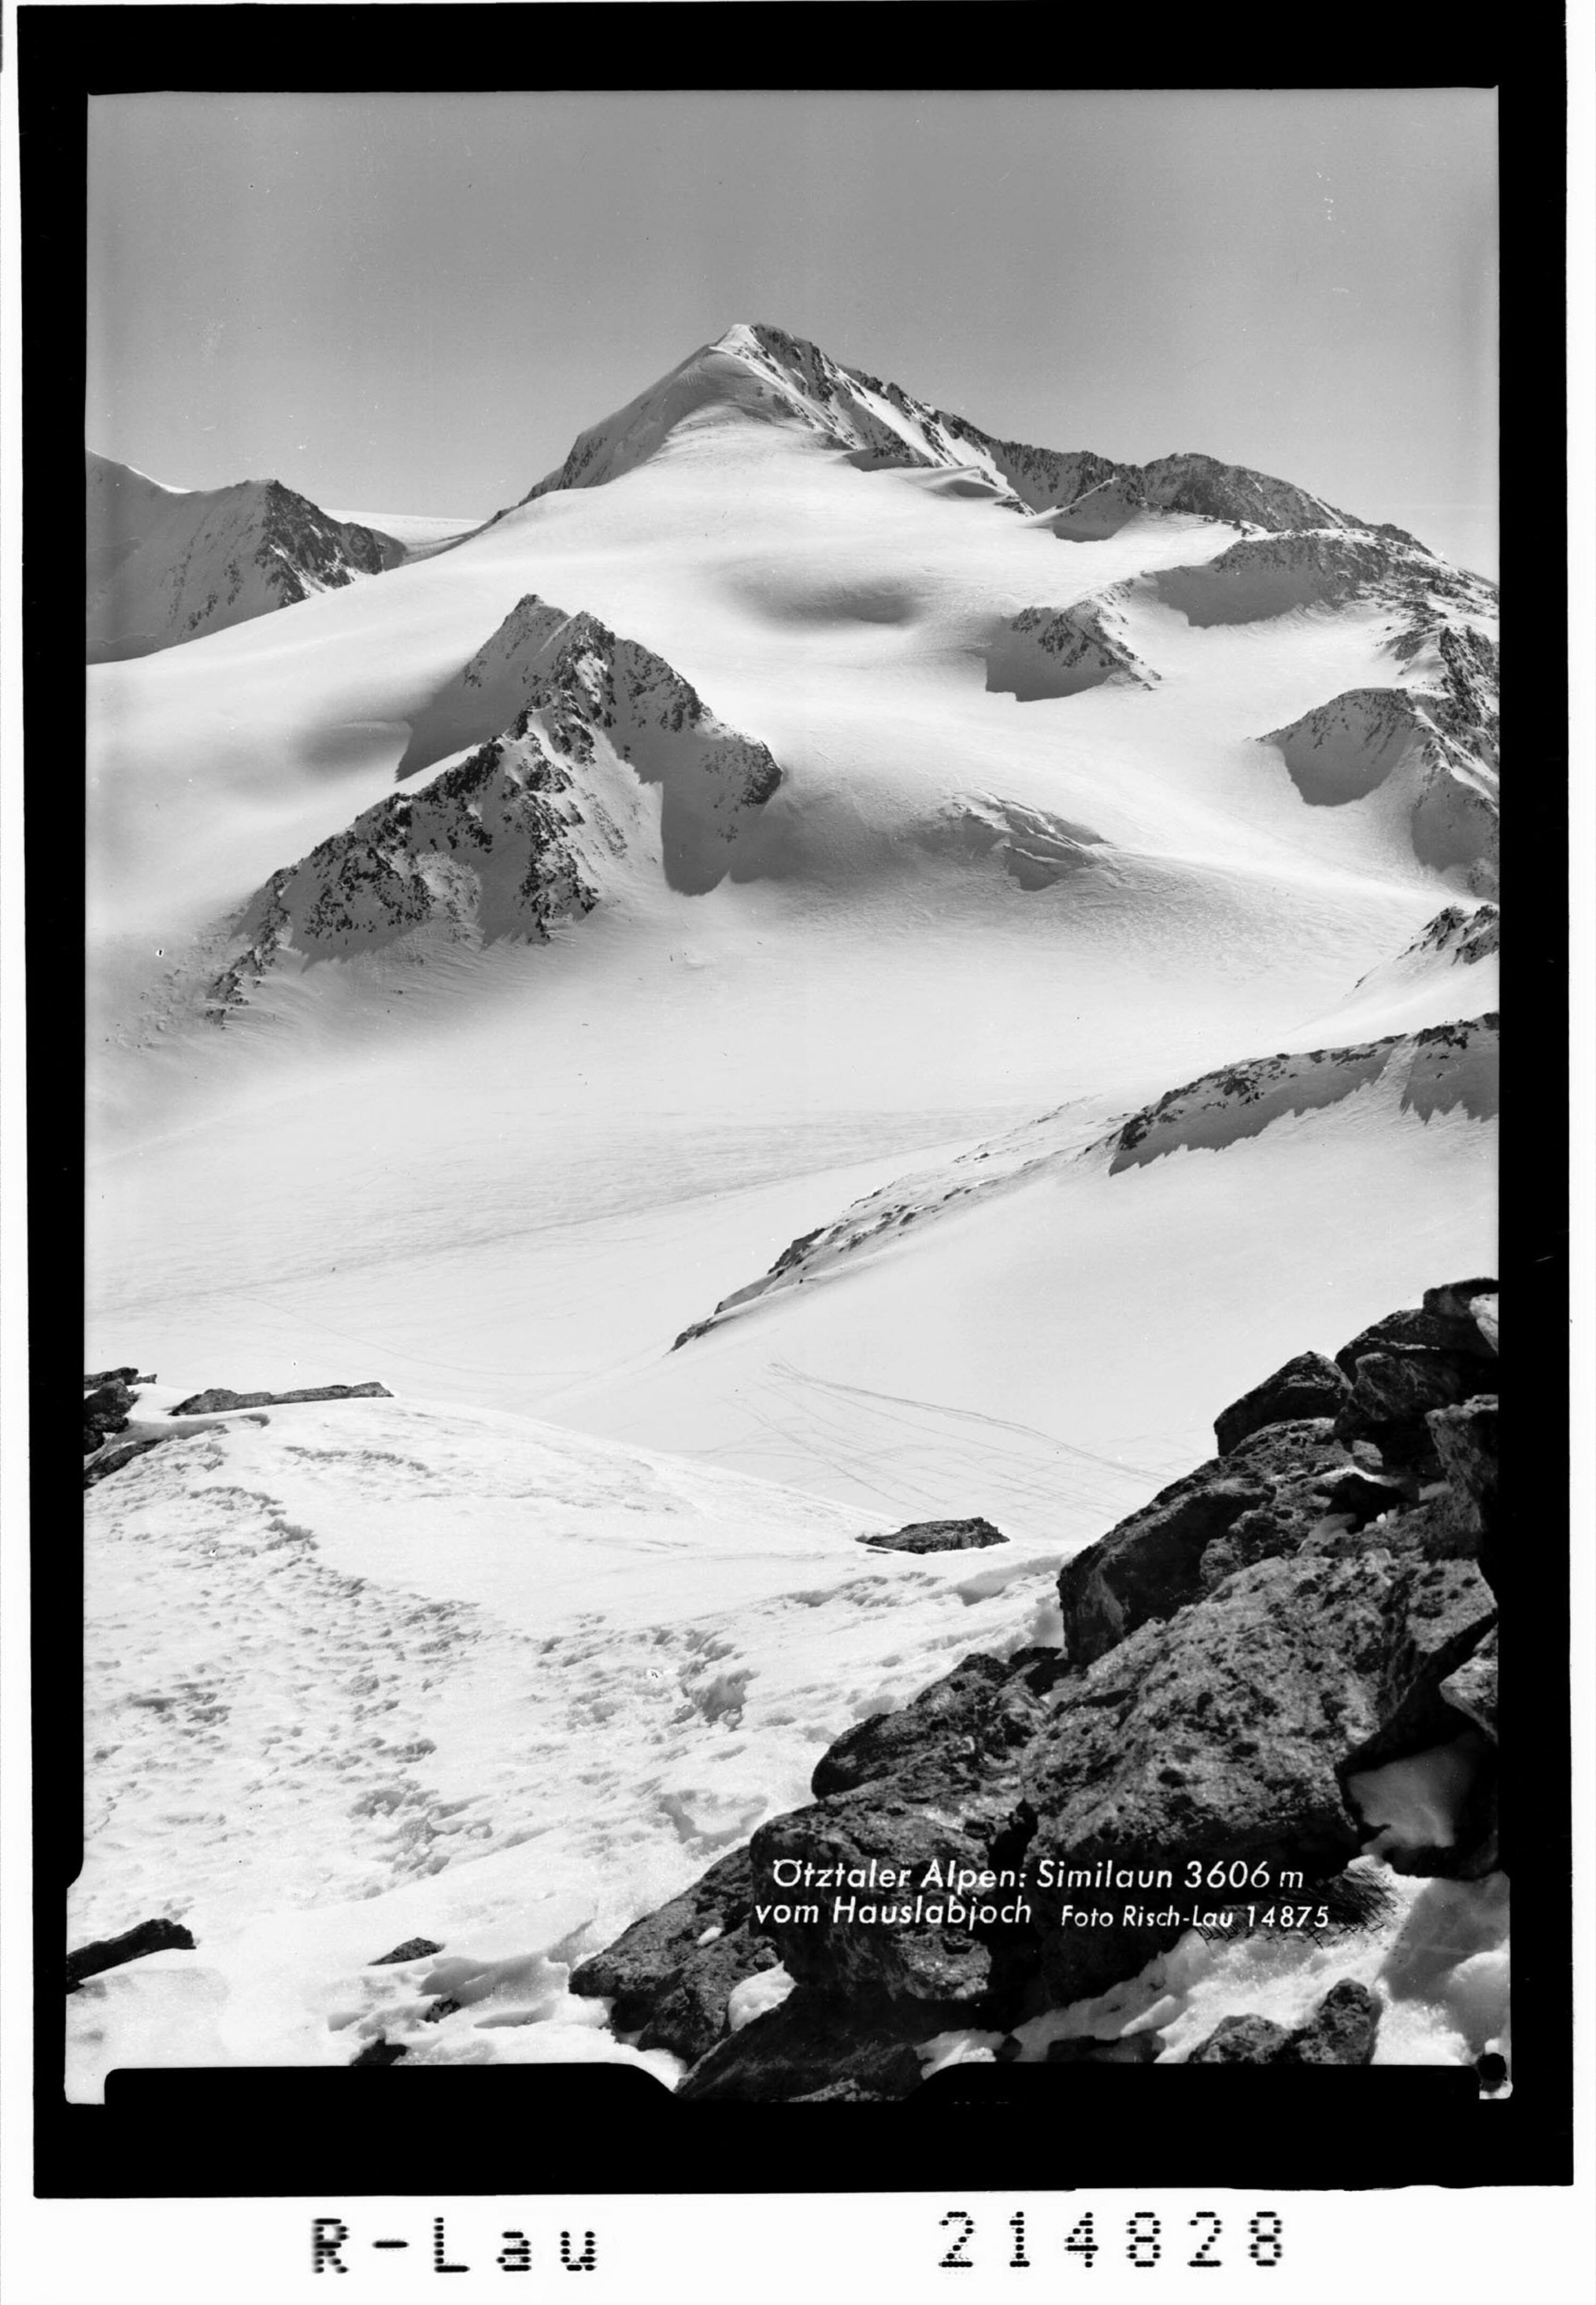 Ötztaler Alpen : Similaun 3606 m vom Hauslabjoch></div>


    <hr>
    <div class=